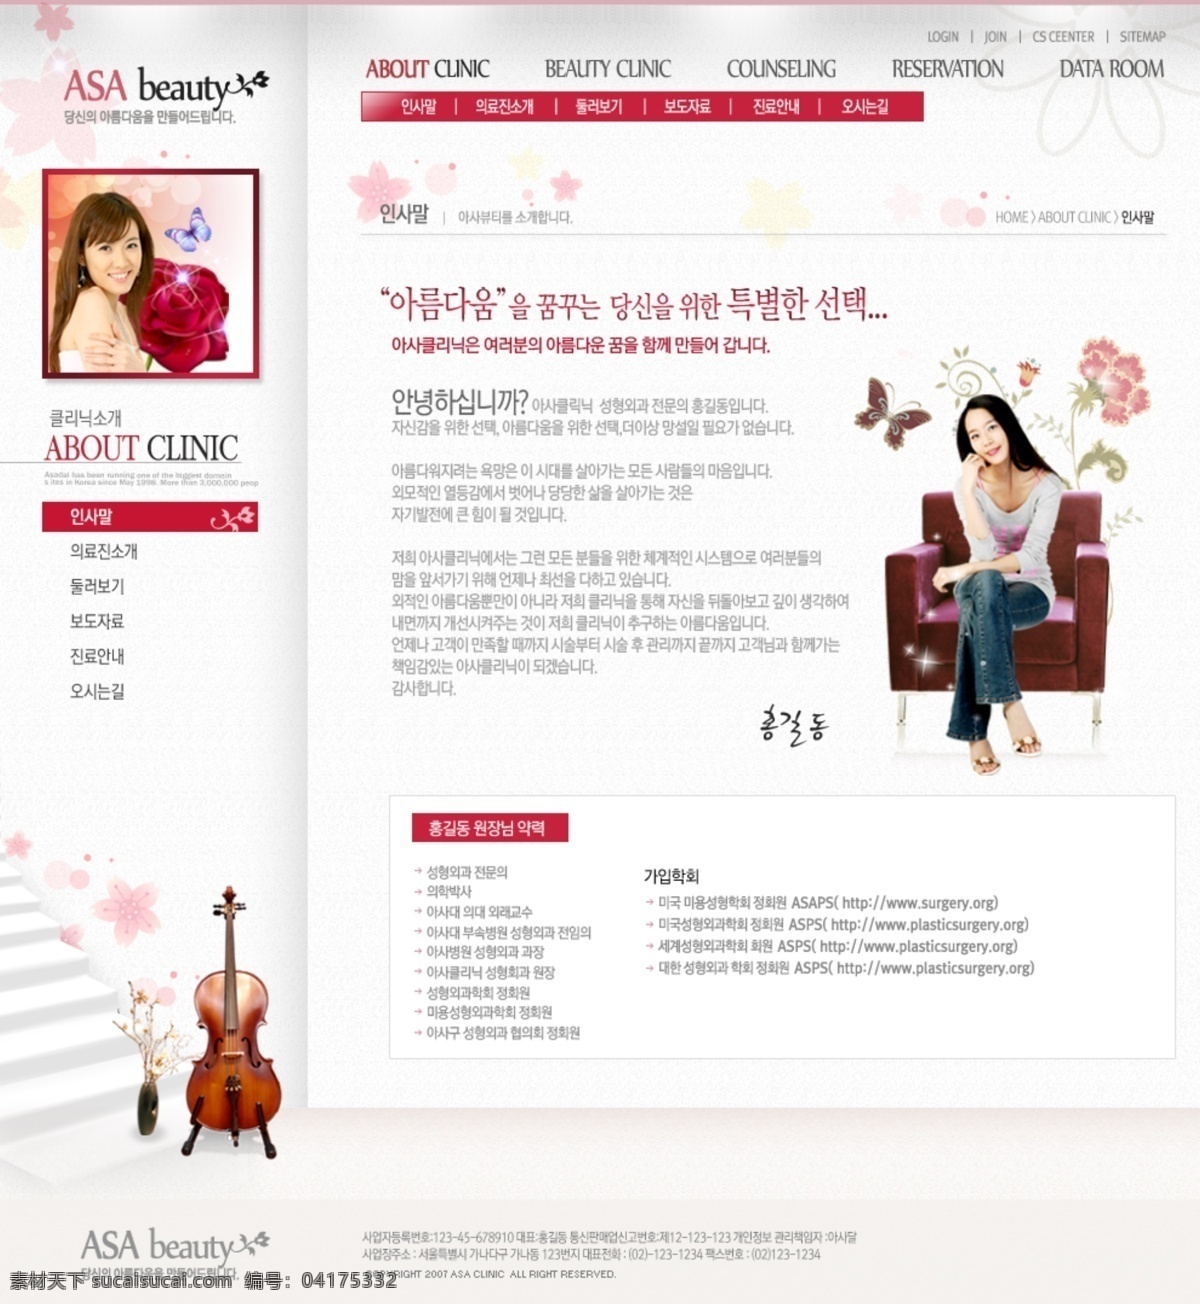 白色 大提琴 韩国模板 红色导航 花朵 简洁 简约风格 美女 网页模板 沙发 左侧分类 新闻列表 源文件 网页素材